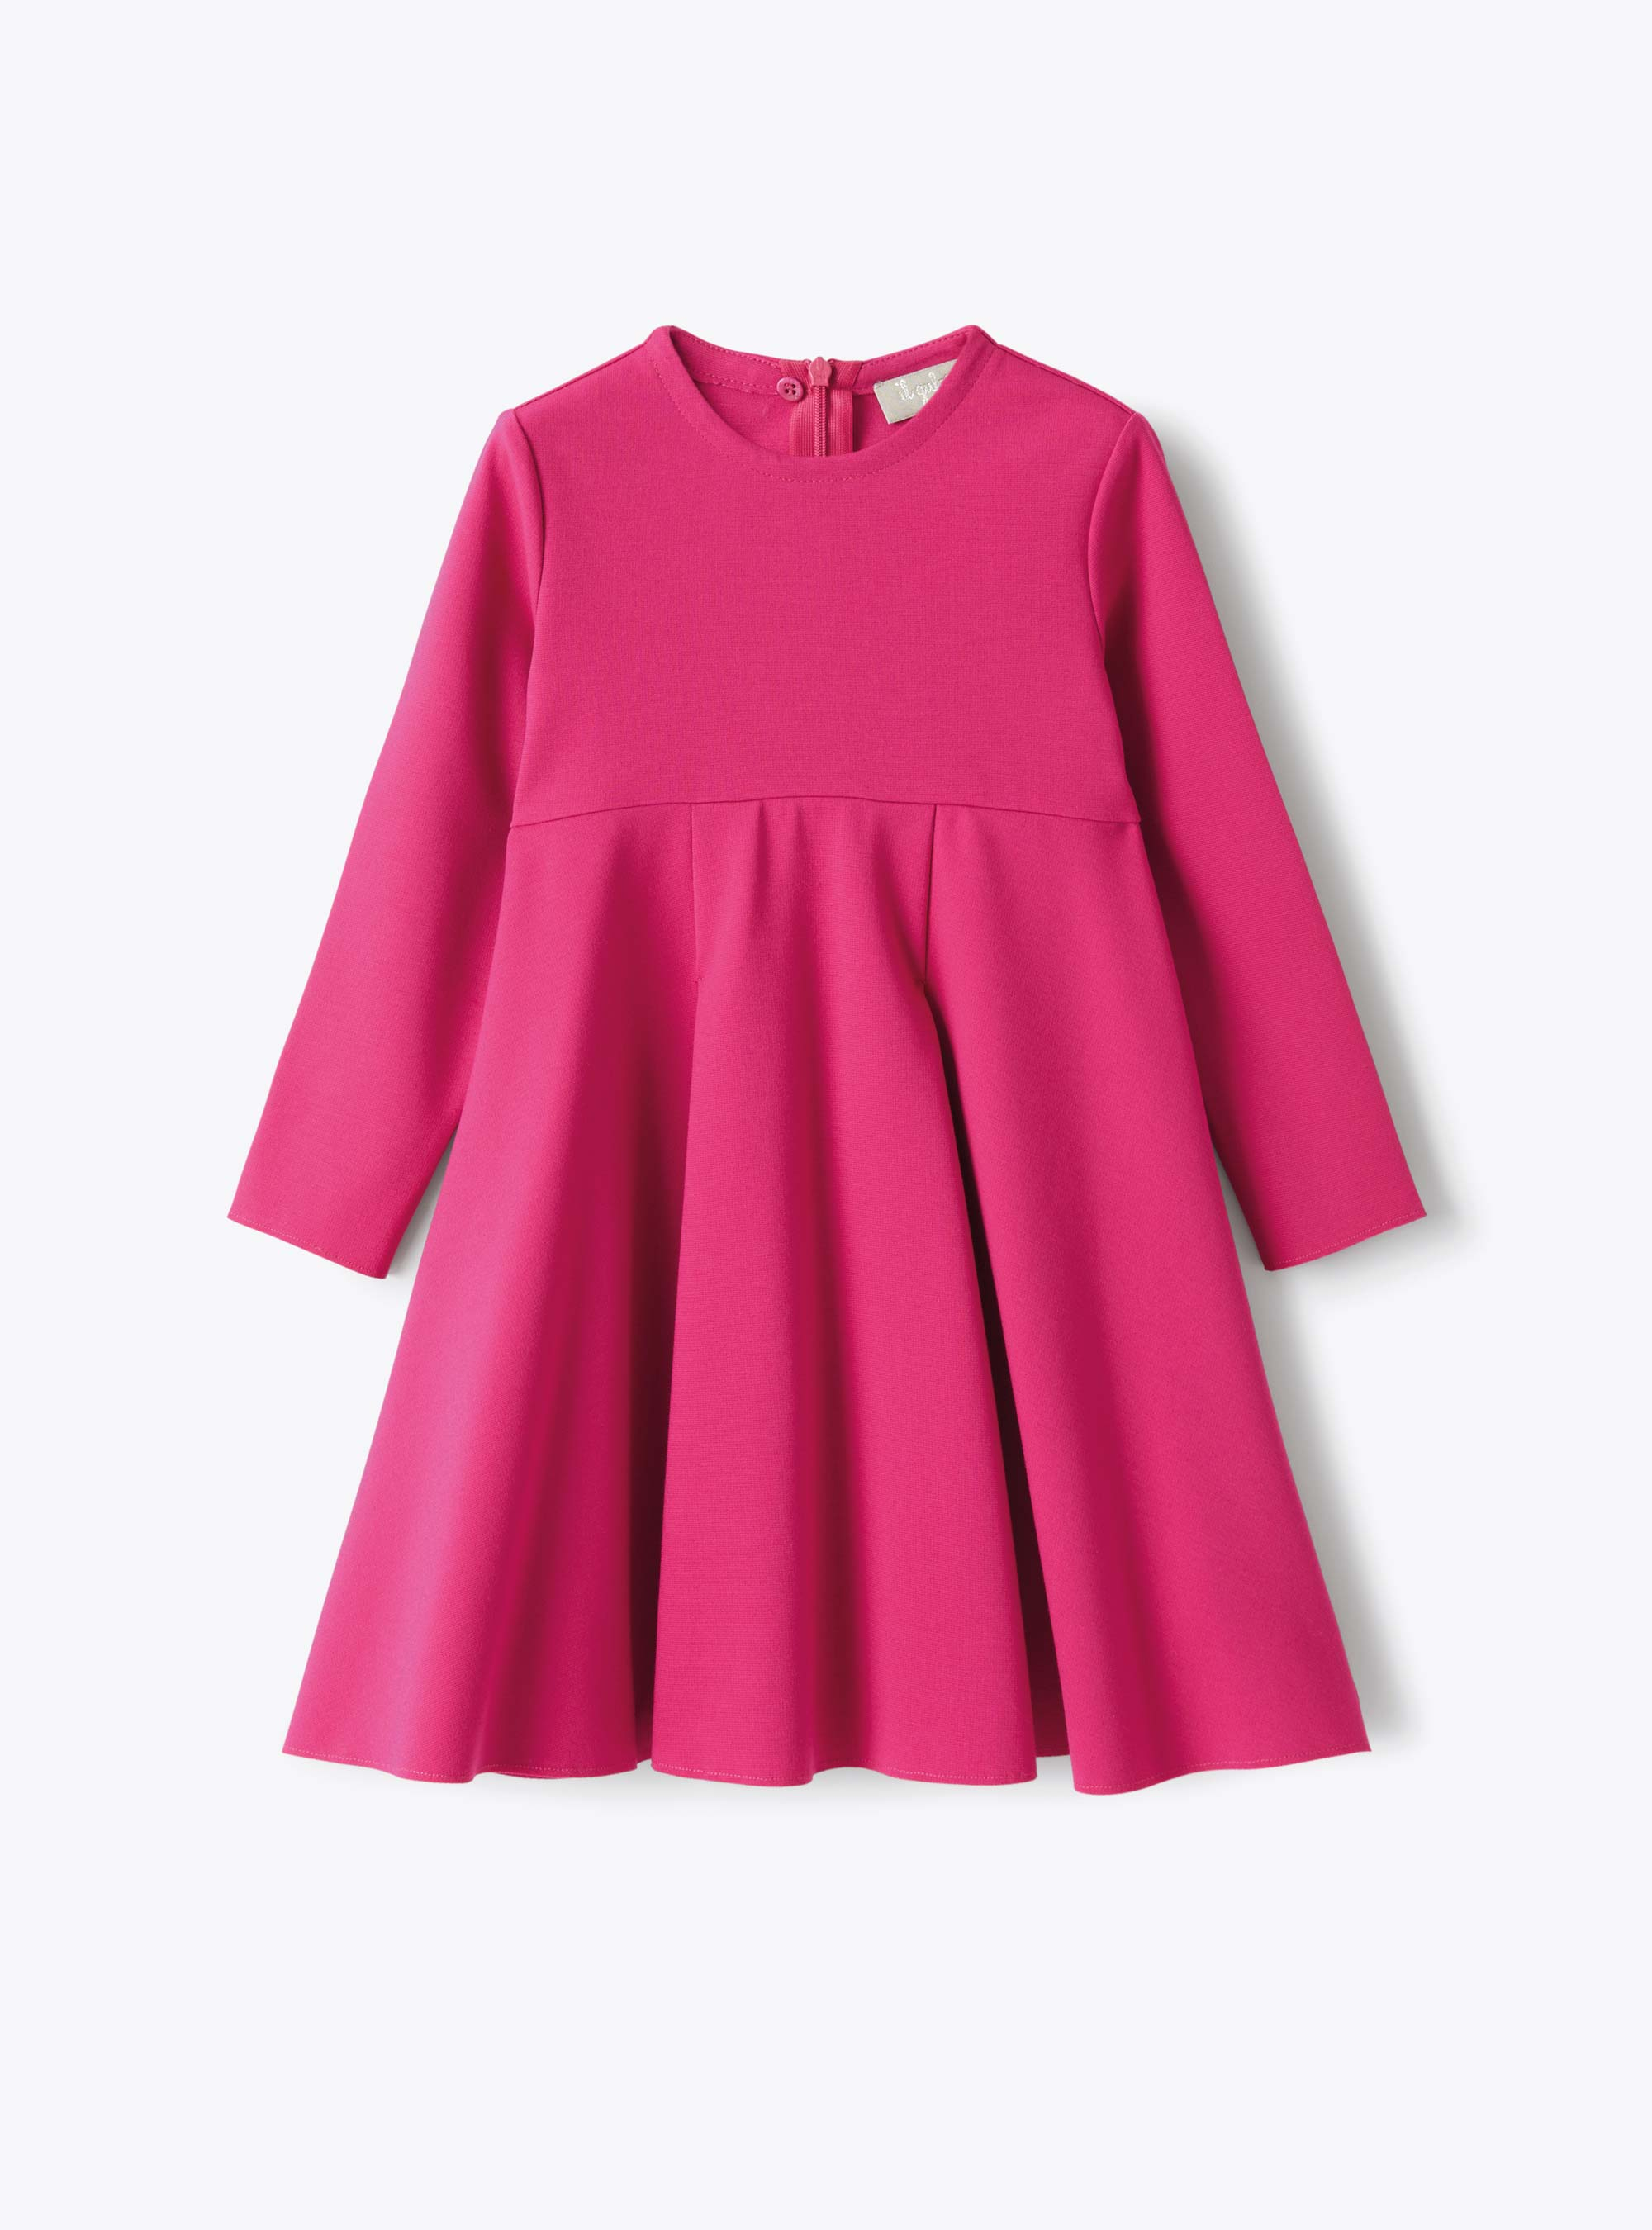 Dress in fuchsia-pink Milano-stitch fabric - Fuchsia | Il Gufo